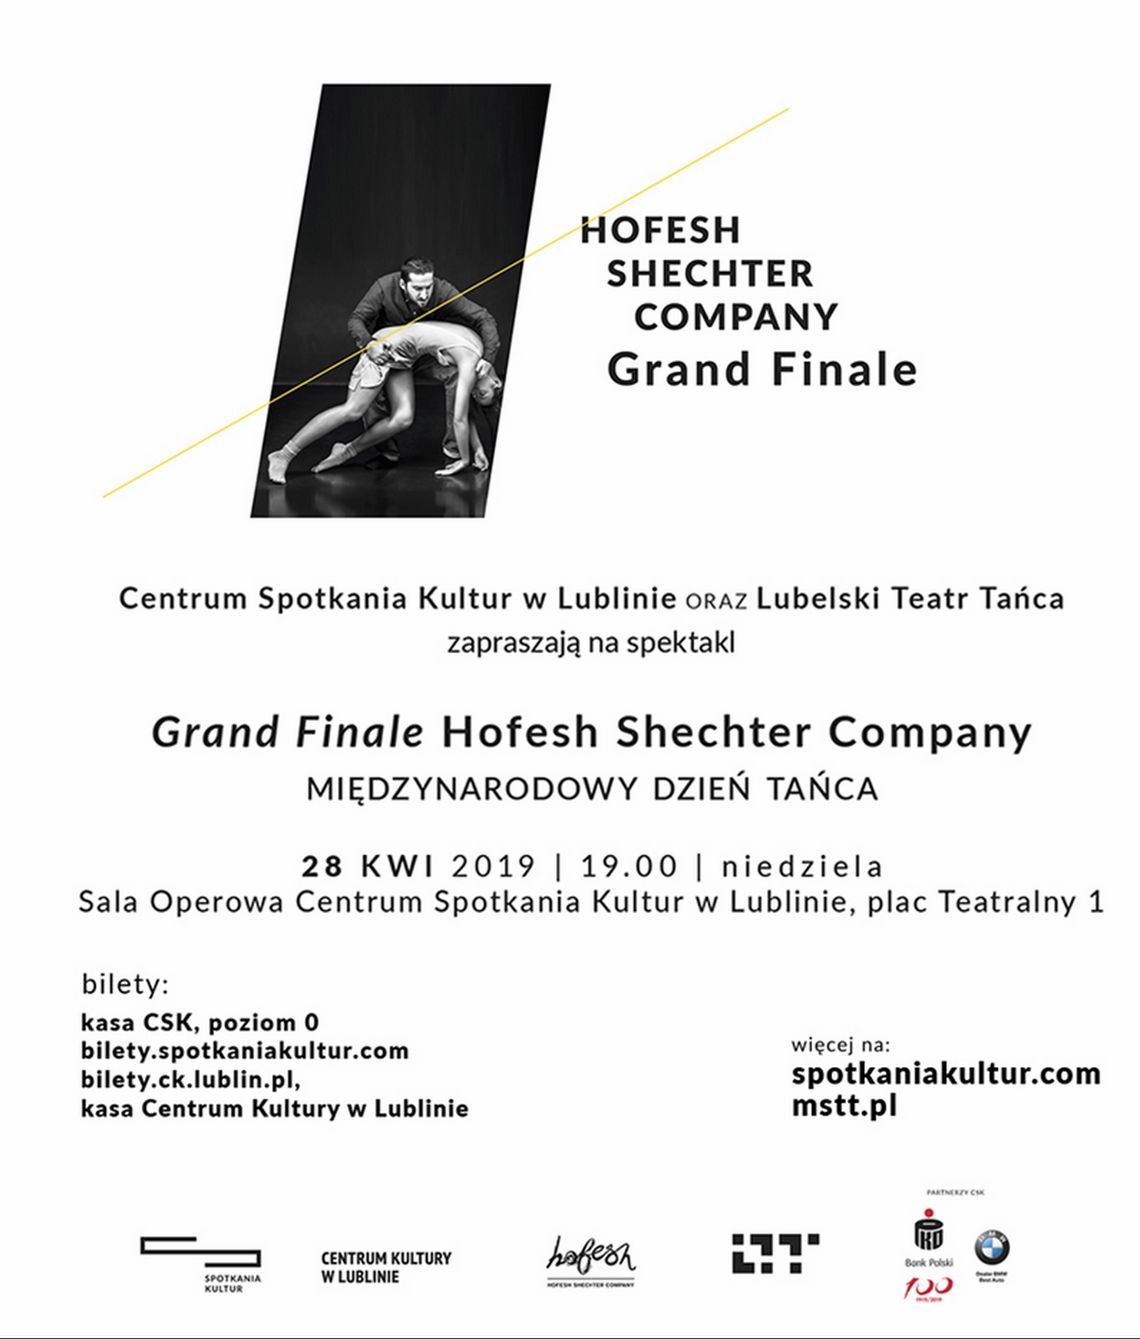 Spektakl "Grand Finale Hofesh Shechter Company" /28 kwietnia 2019